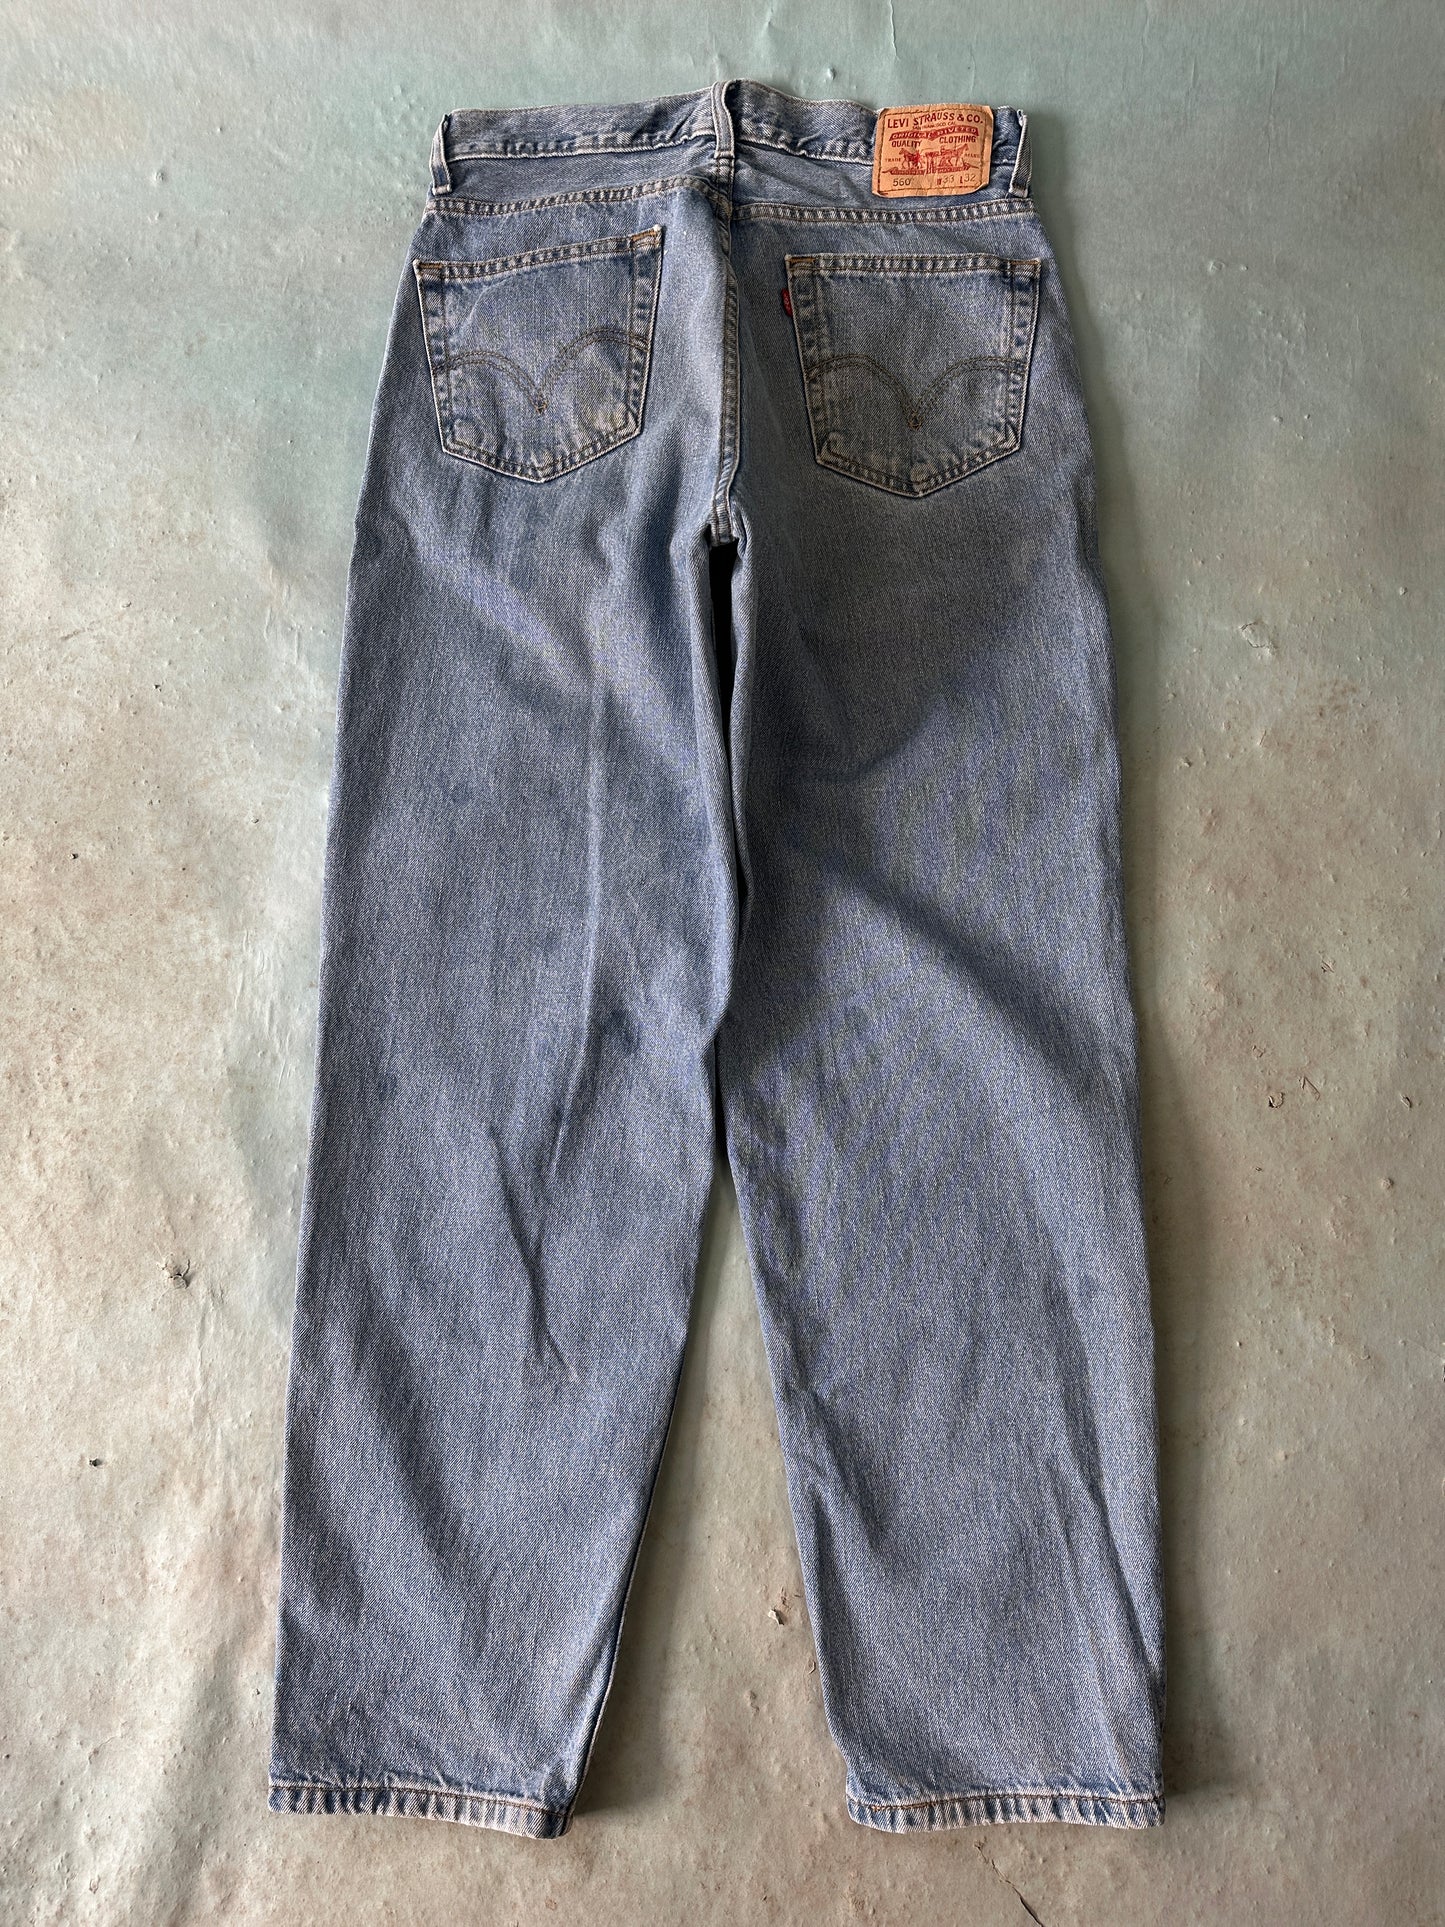 Levis 560 Vintage Jeans - 33 x 32